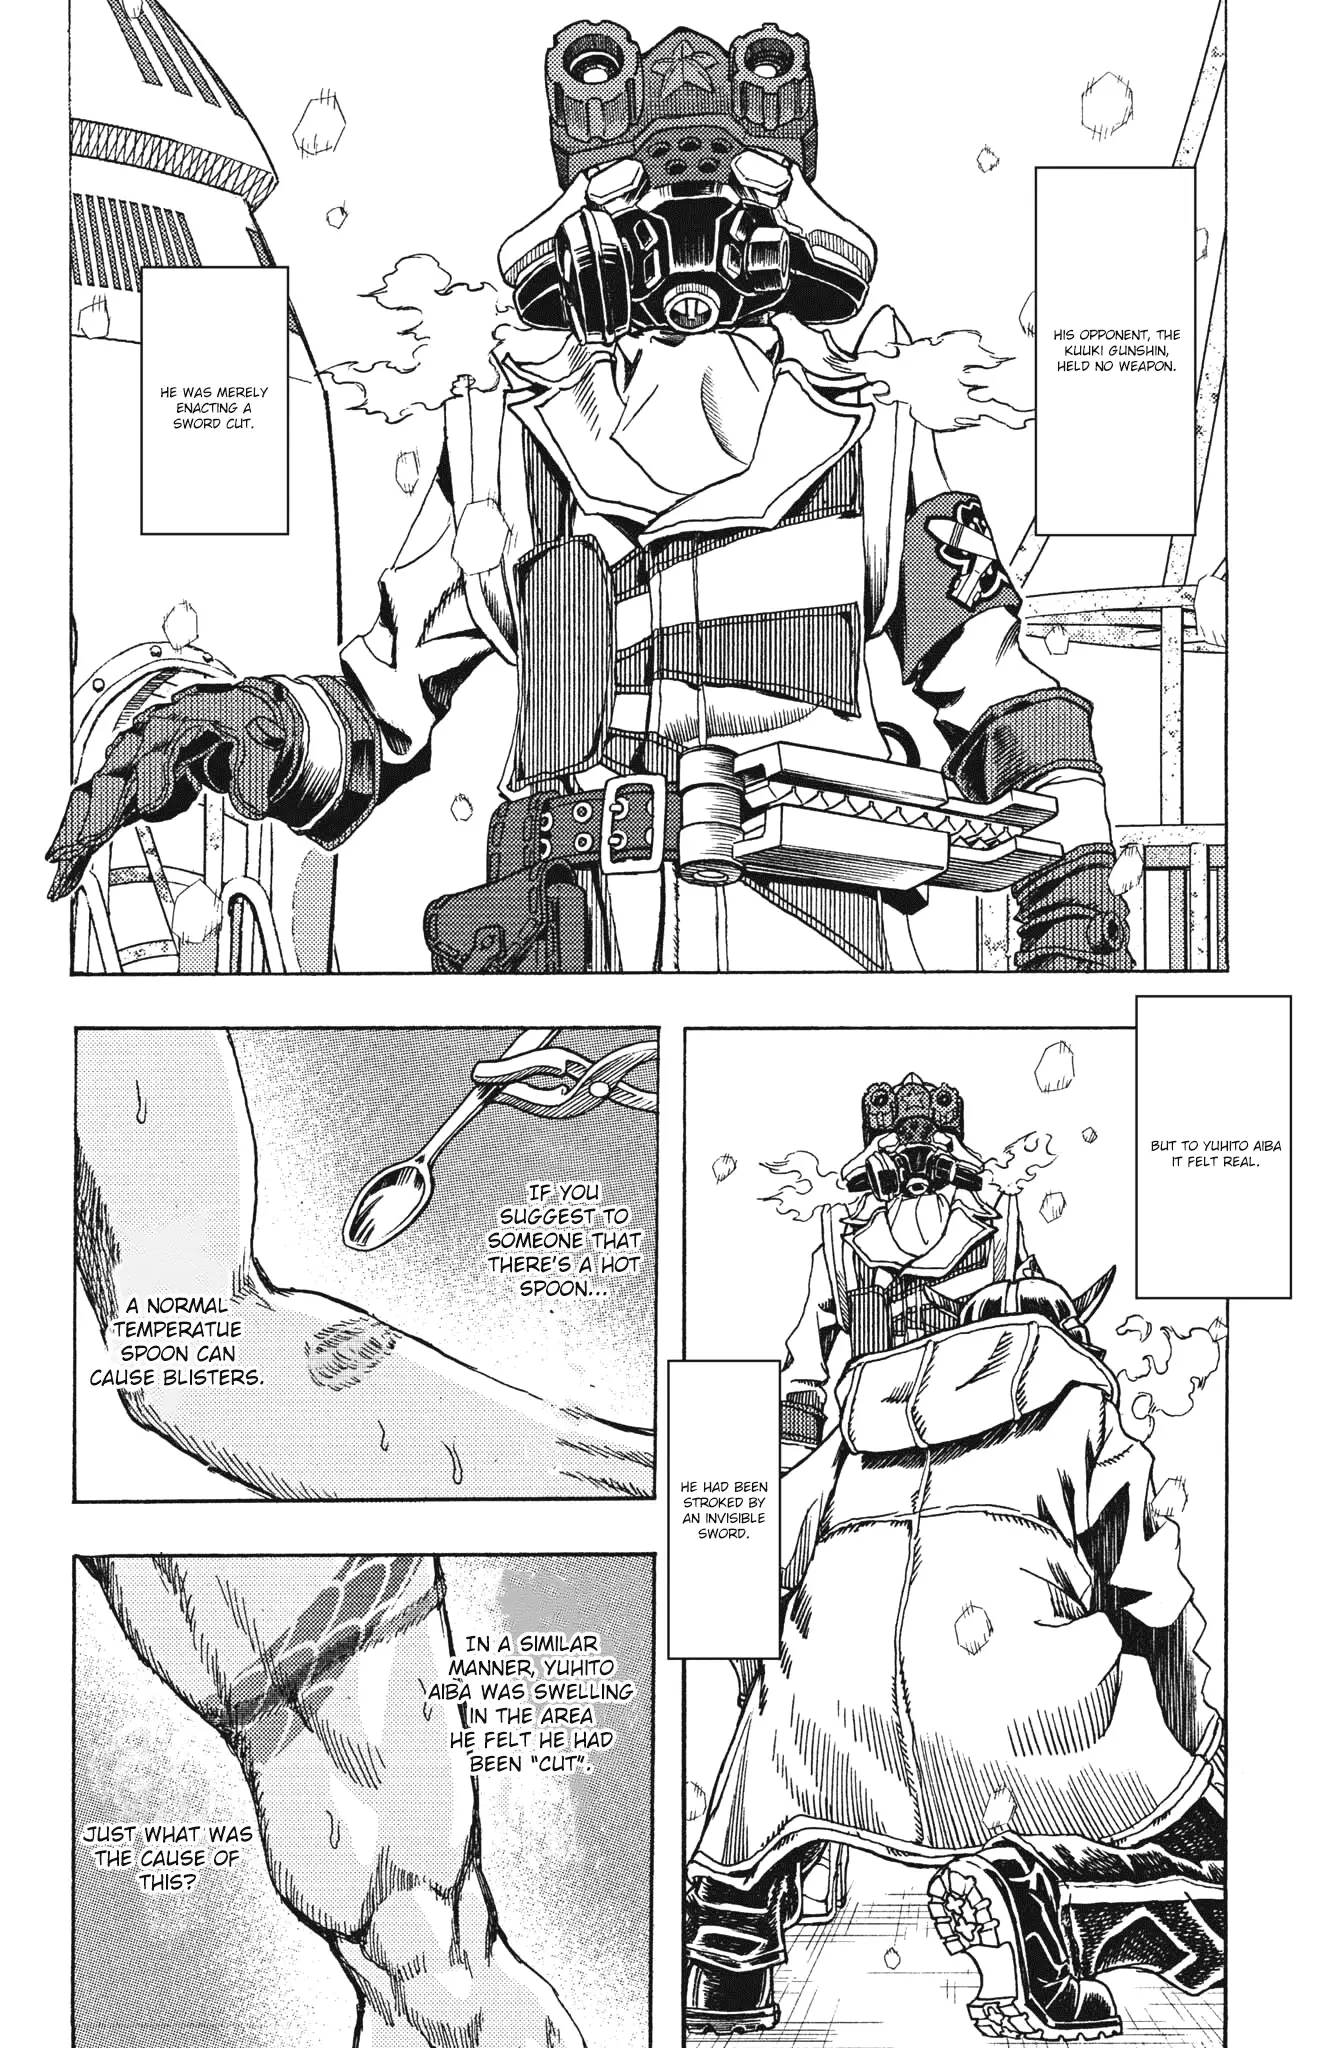 Gekikou Kamen - 25 page 6-08f05e07